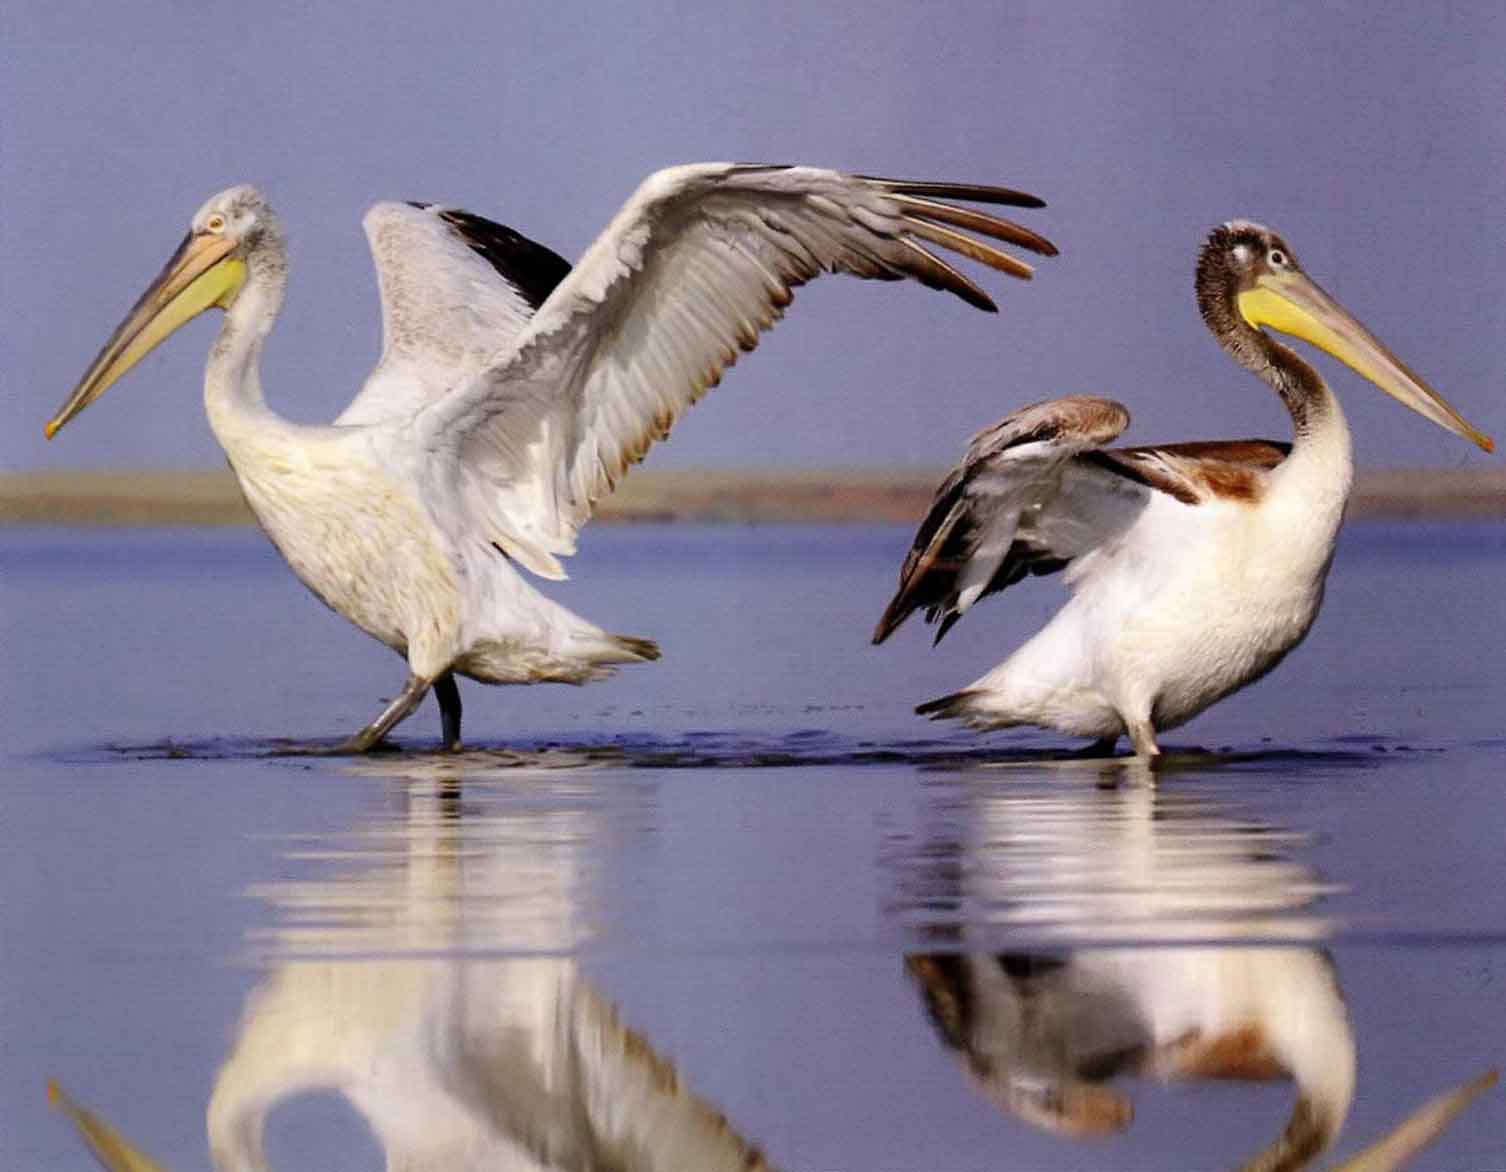 Перья пеликанов быстро намокают, и птицы отжимают их своими длинными клювами.